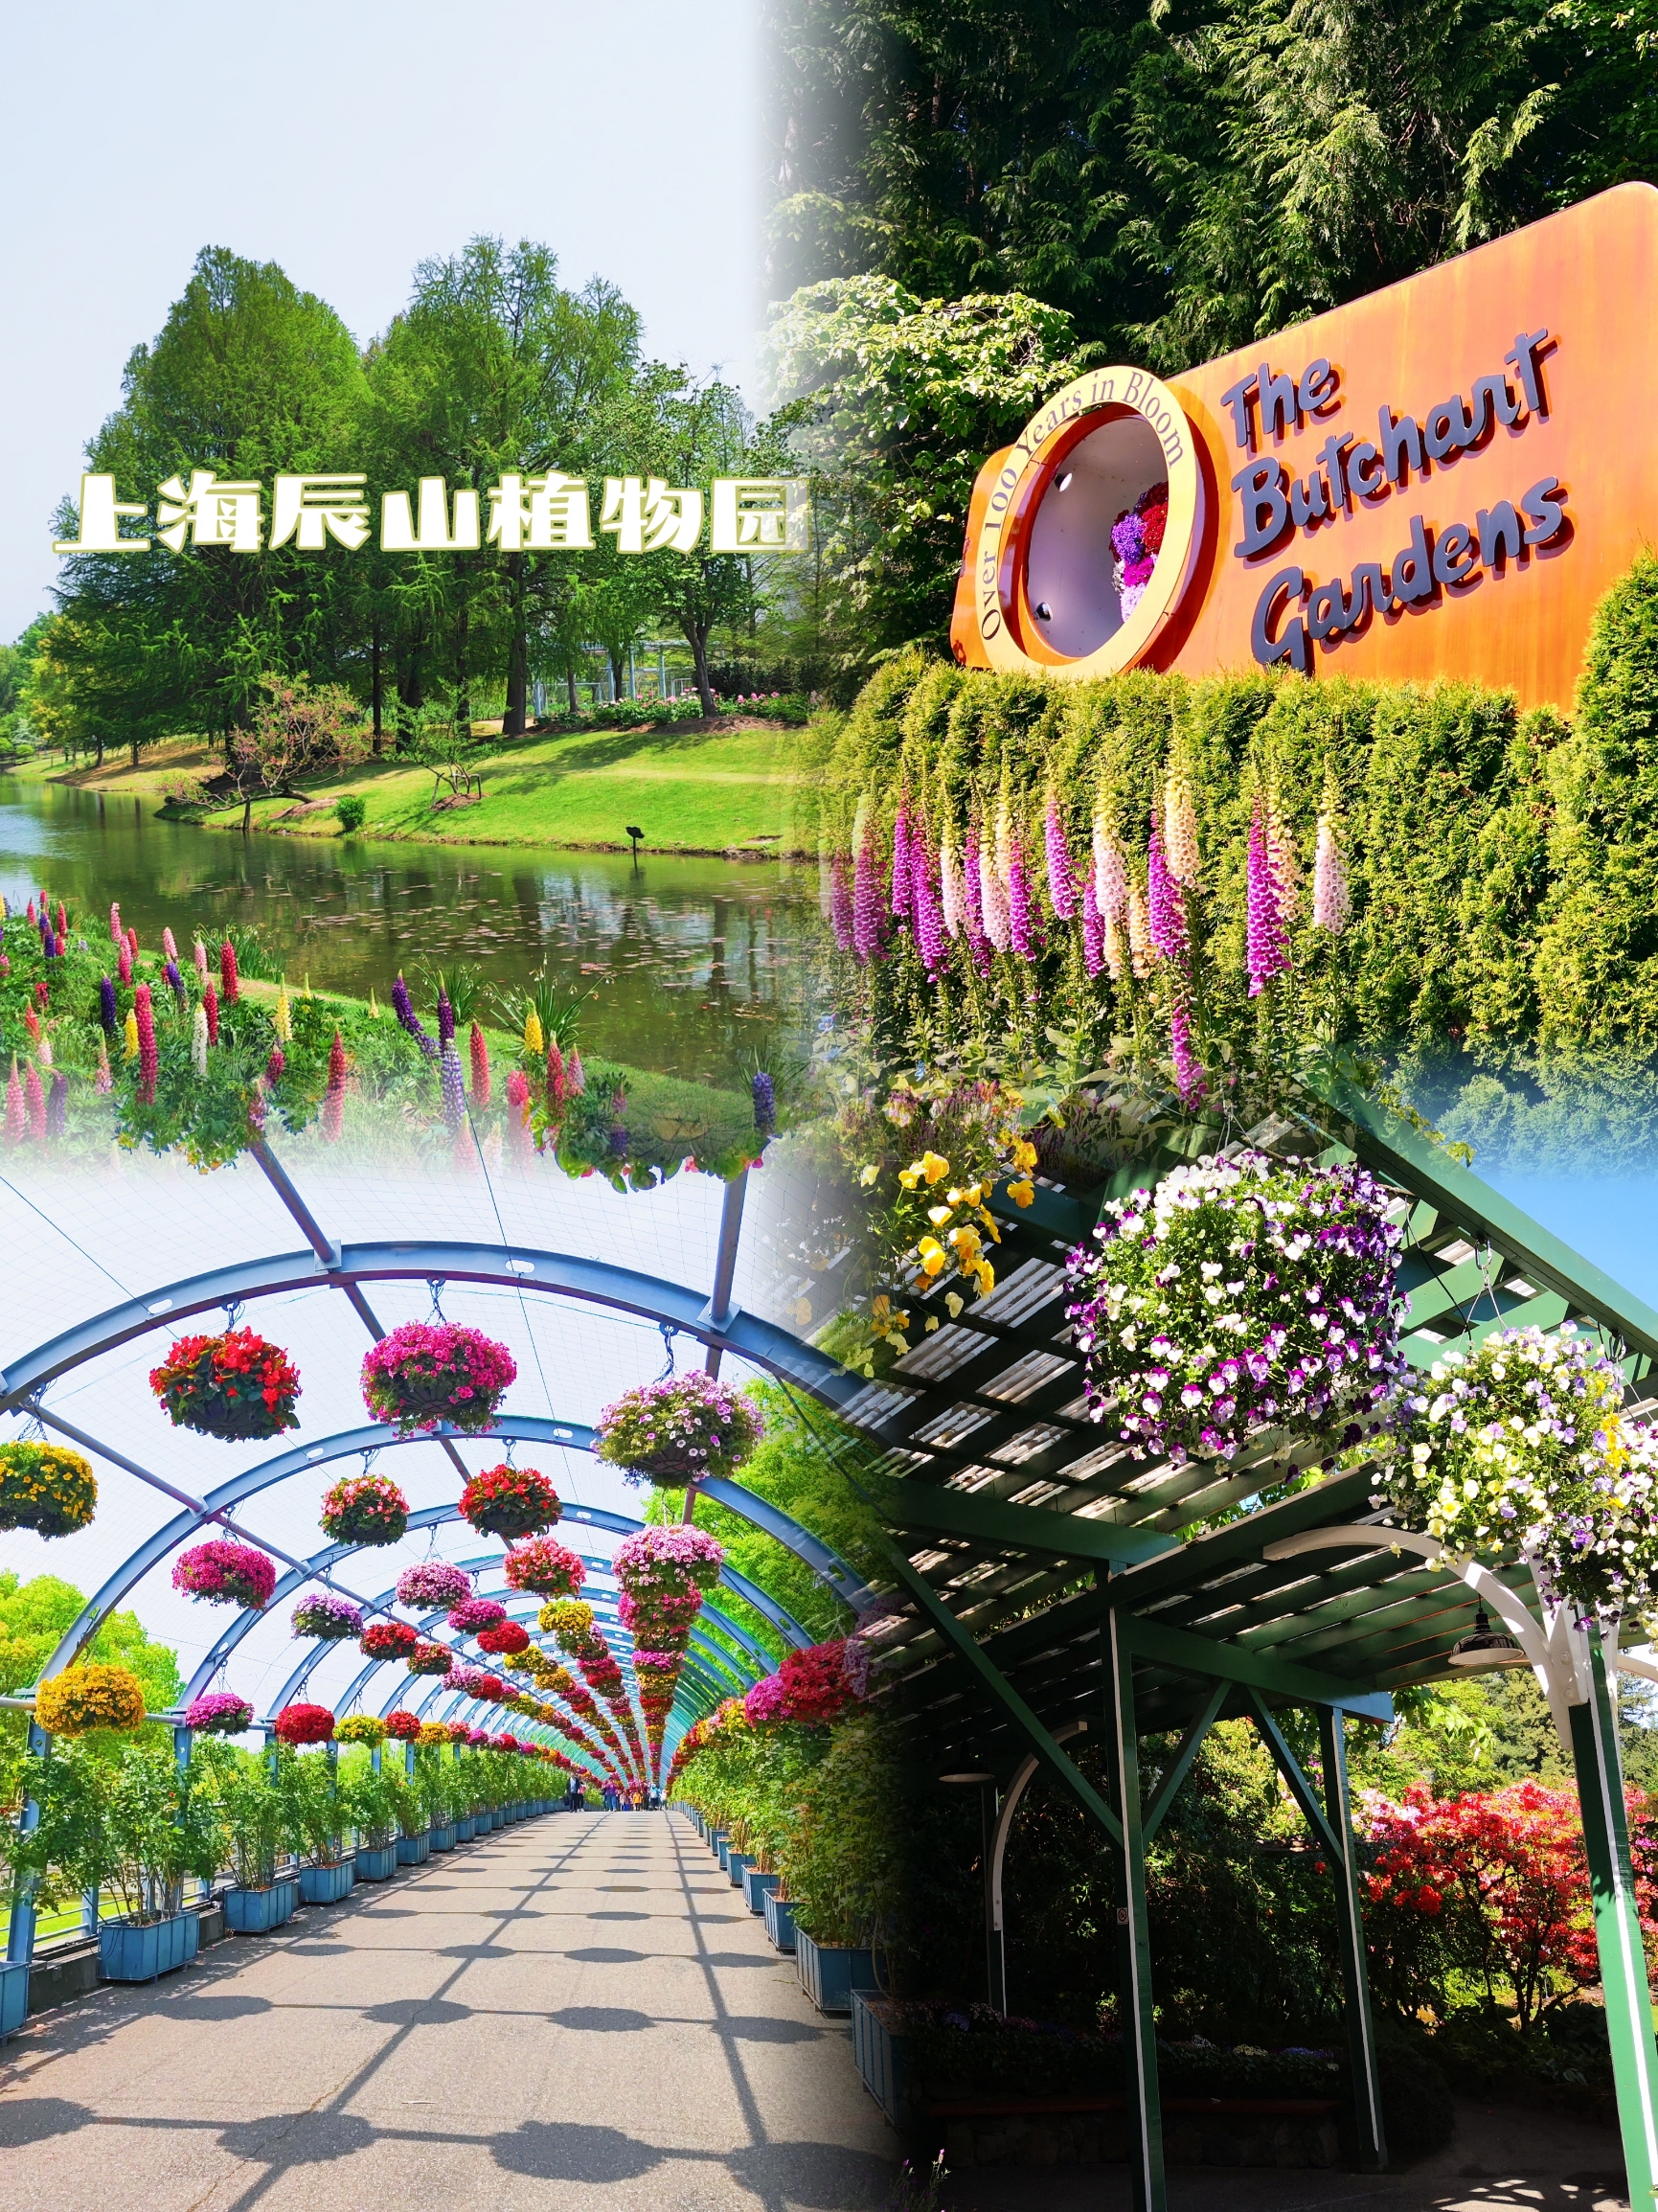 布查特花园 辰山植物园 从加拿大到上海 休闲赏花必打卡